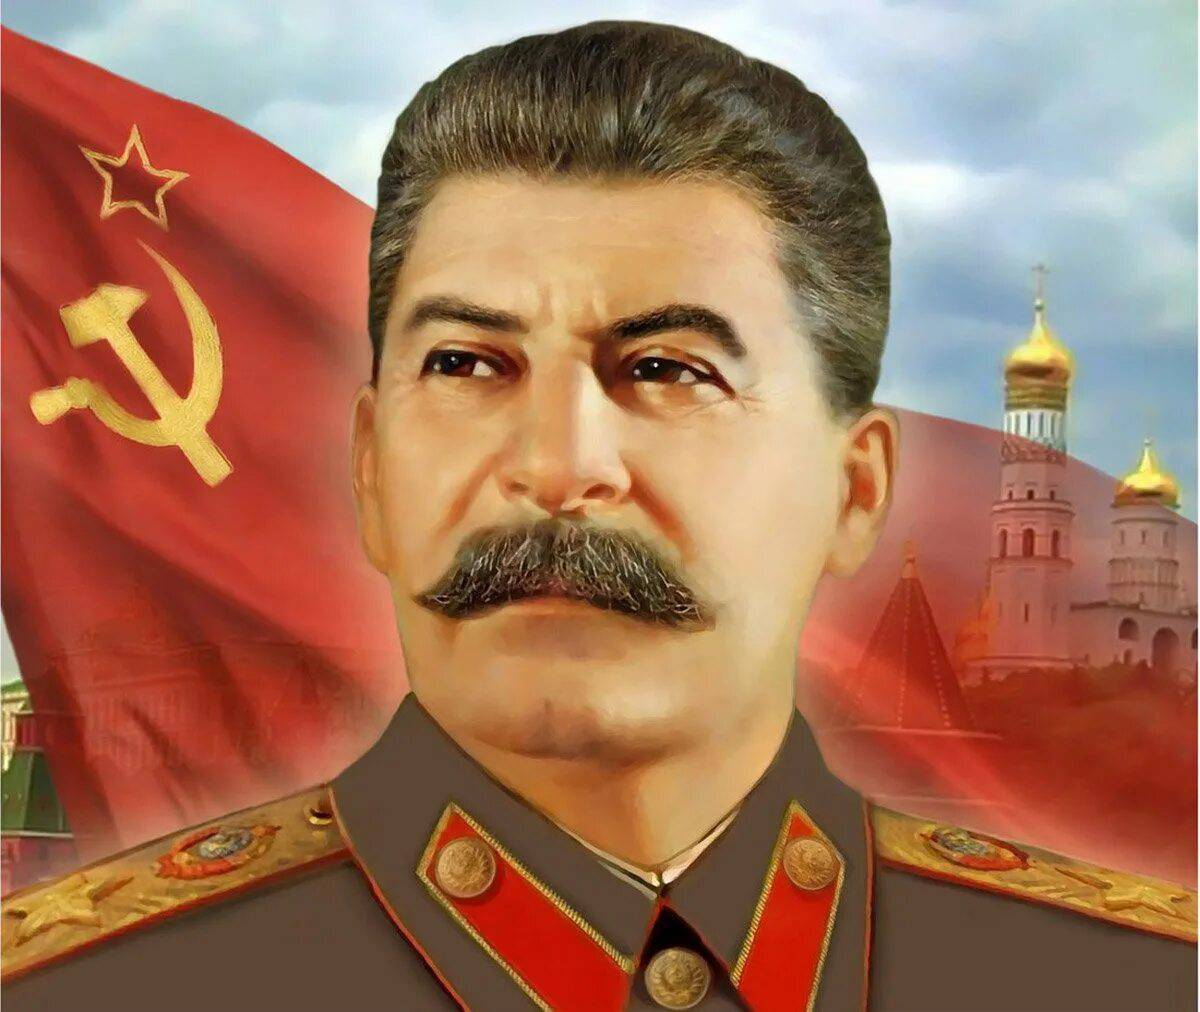 Сталин #1